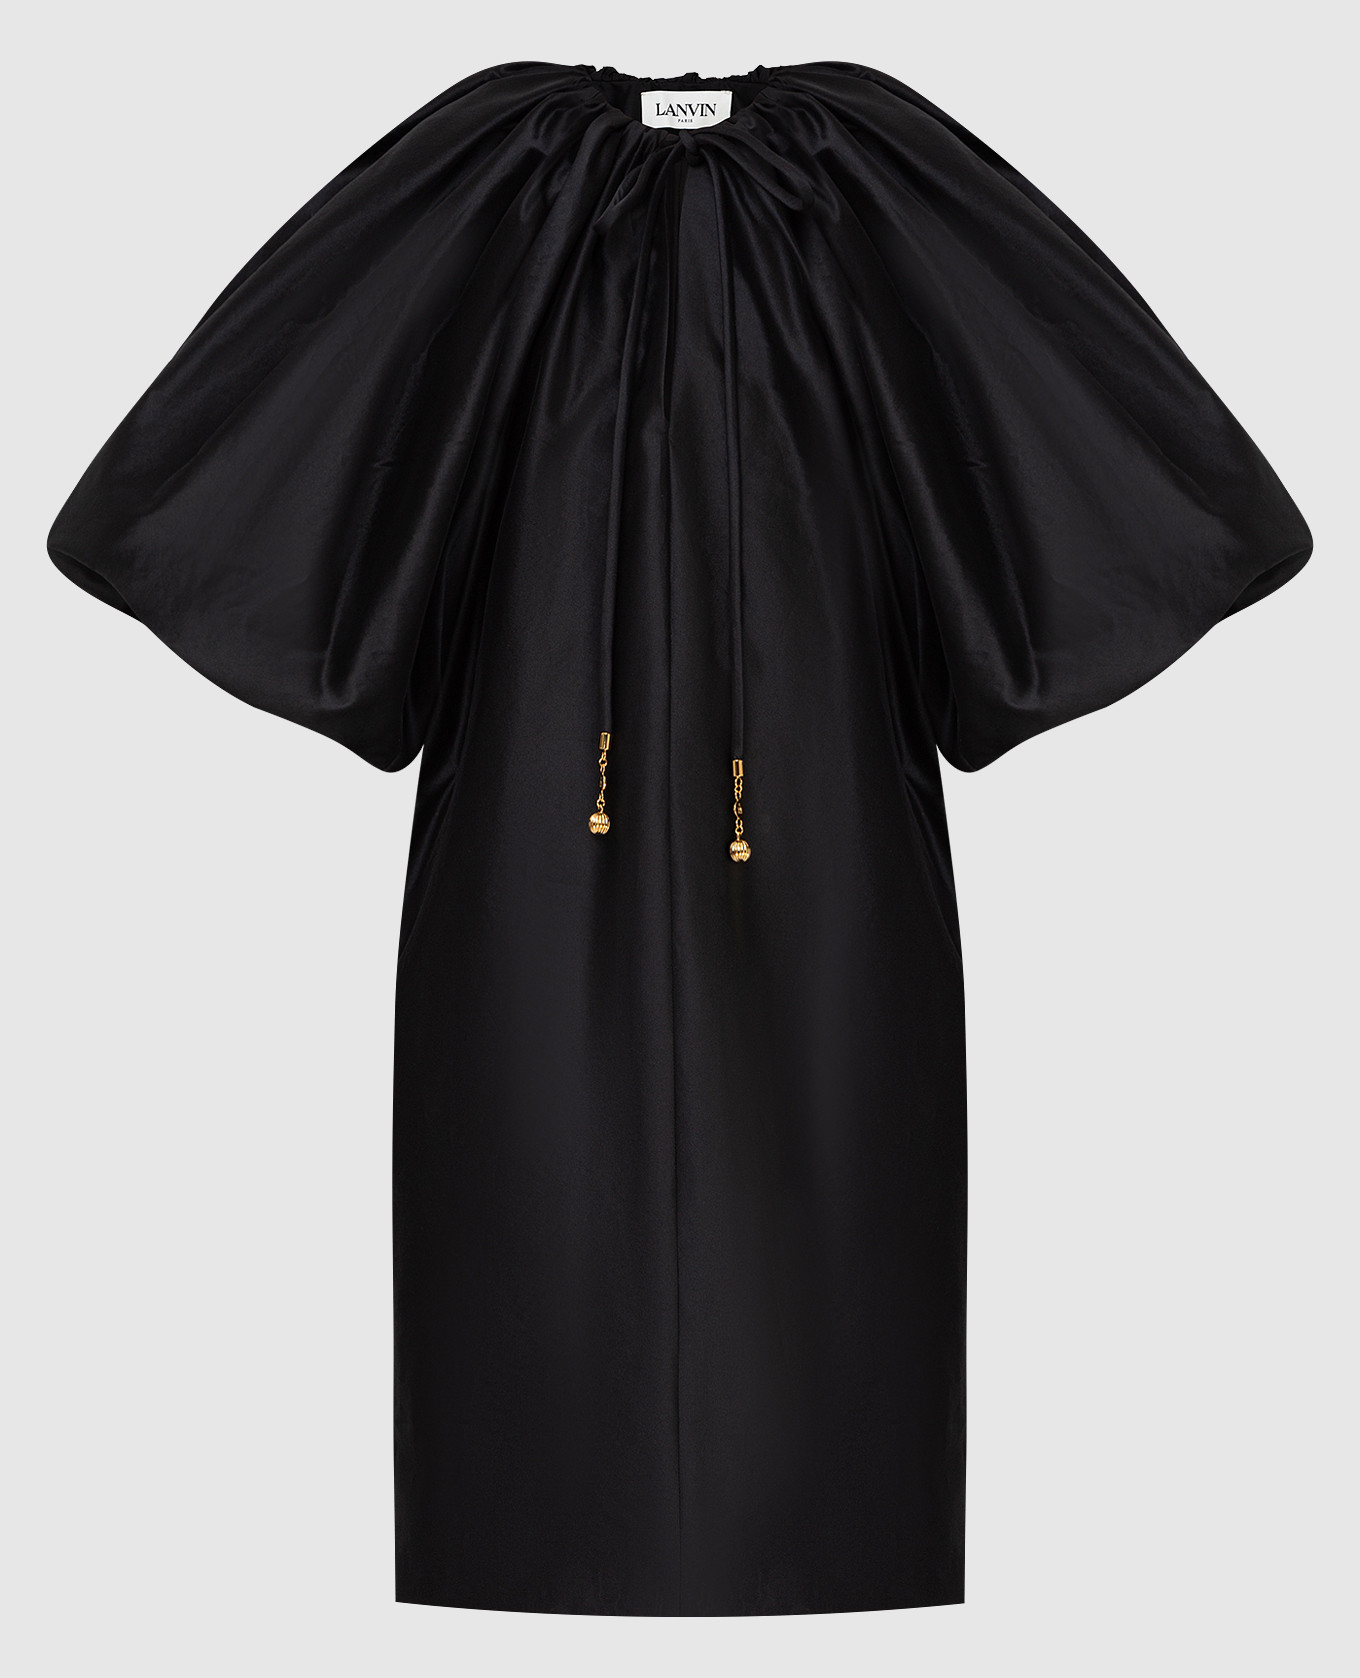 Lanvin - Черное платье с воздушными рукавами RWDR00054878 купить в Symbol